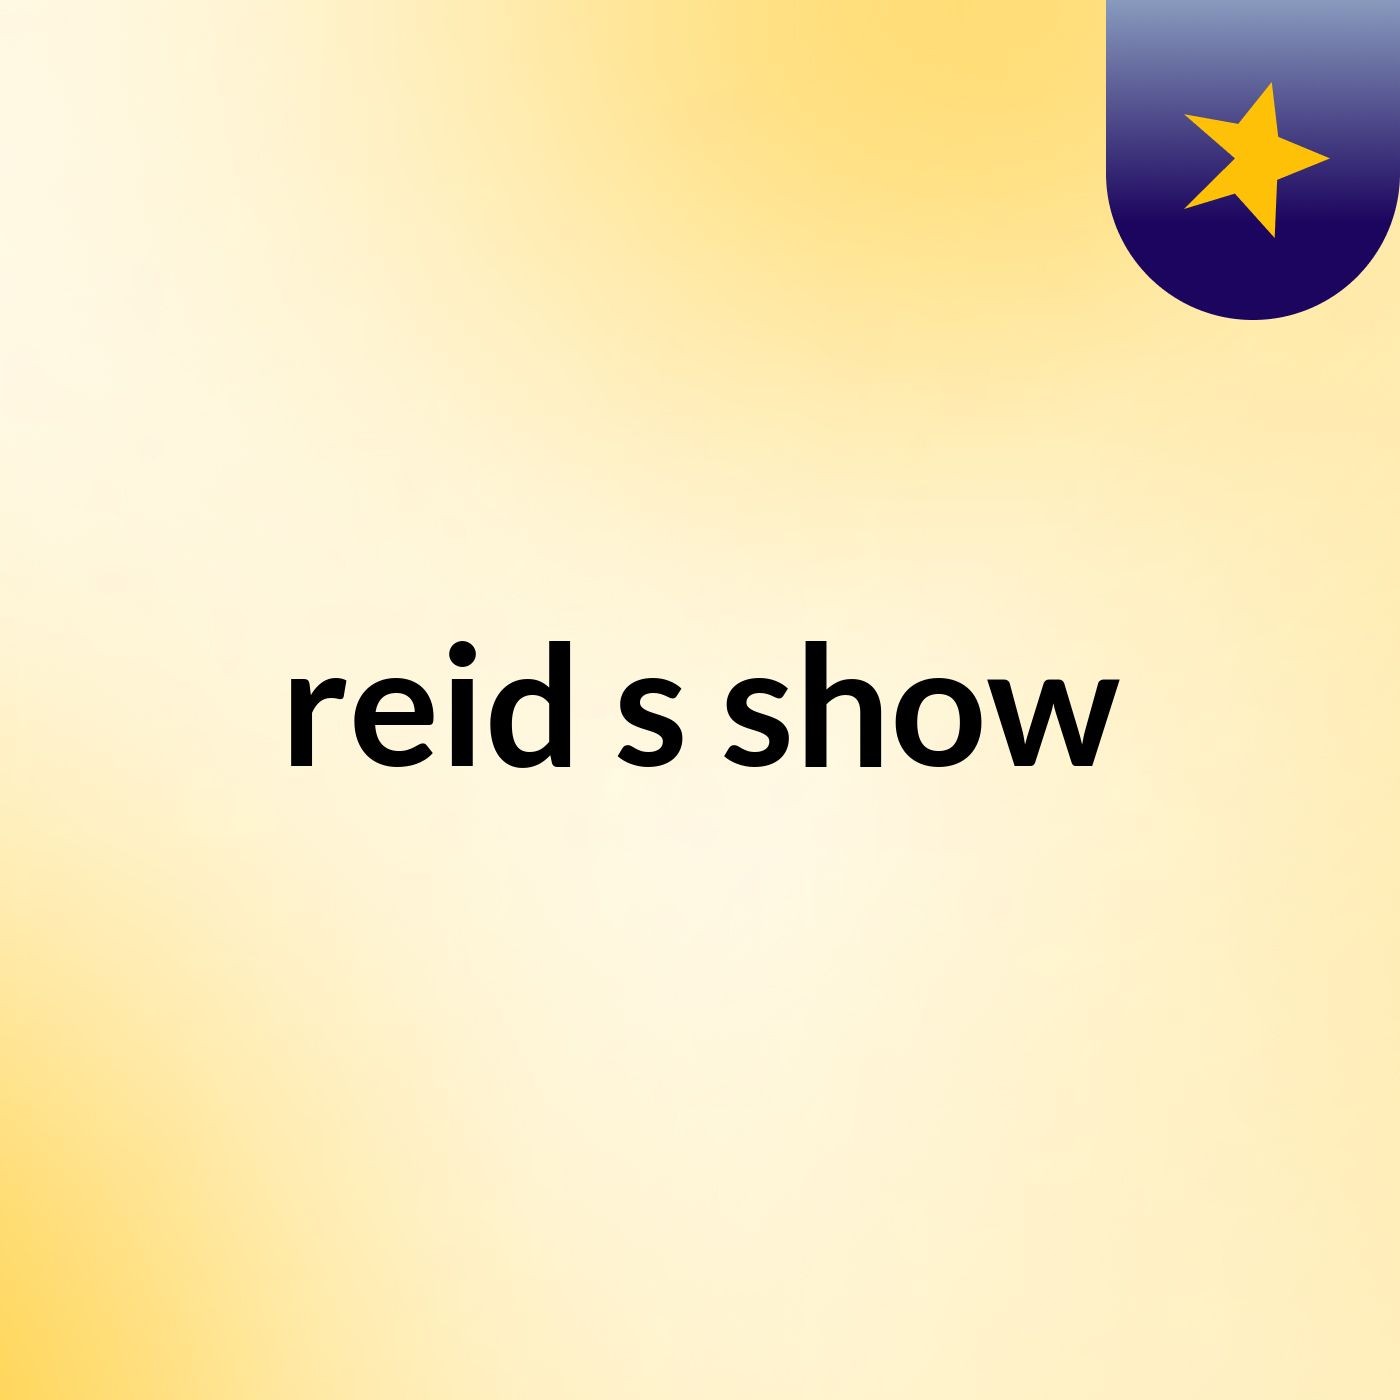 reid's show